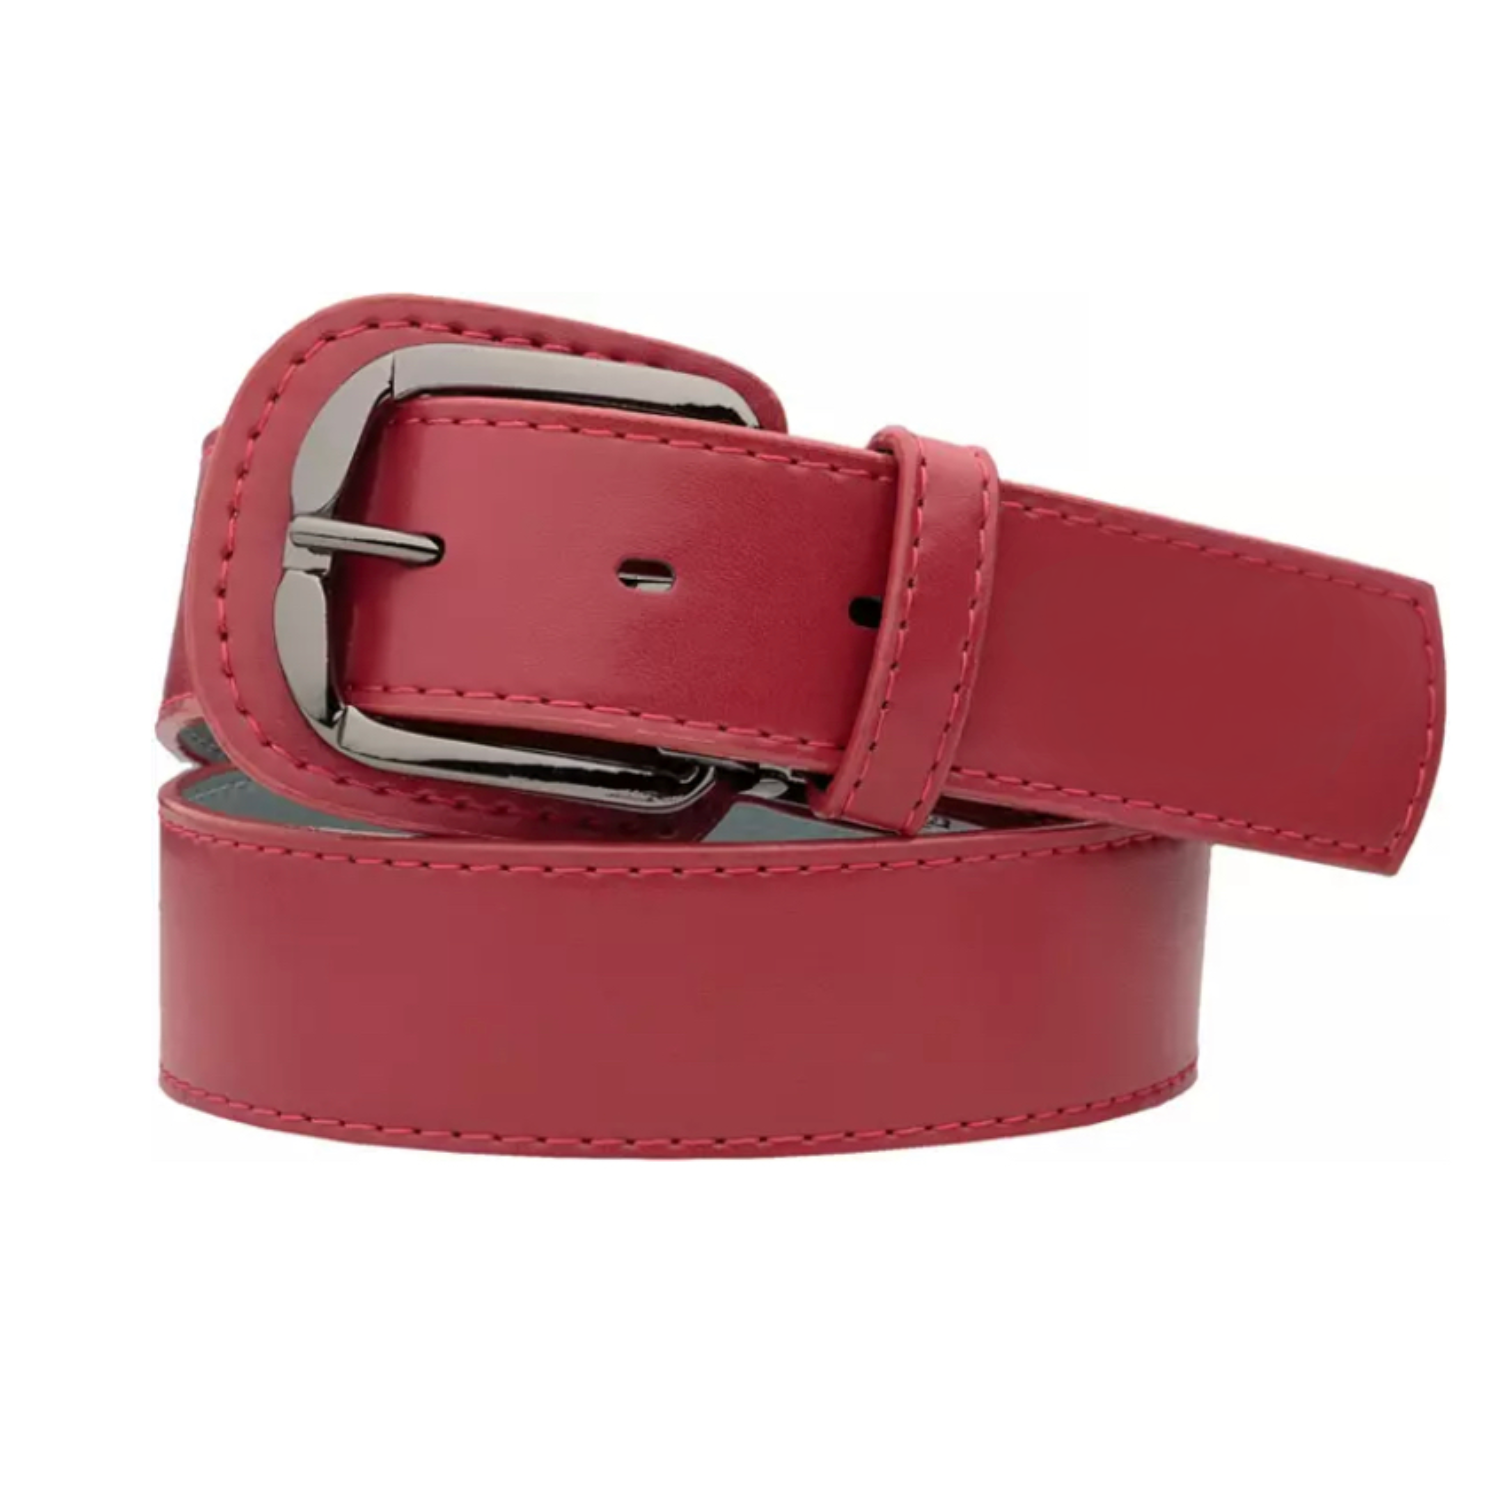 Custom Baller Leather Belts